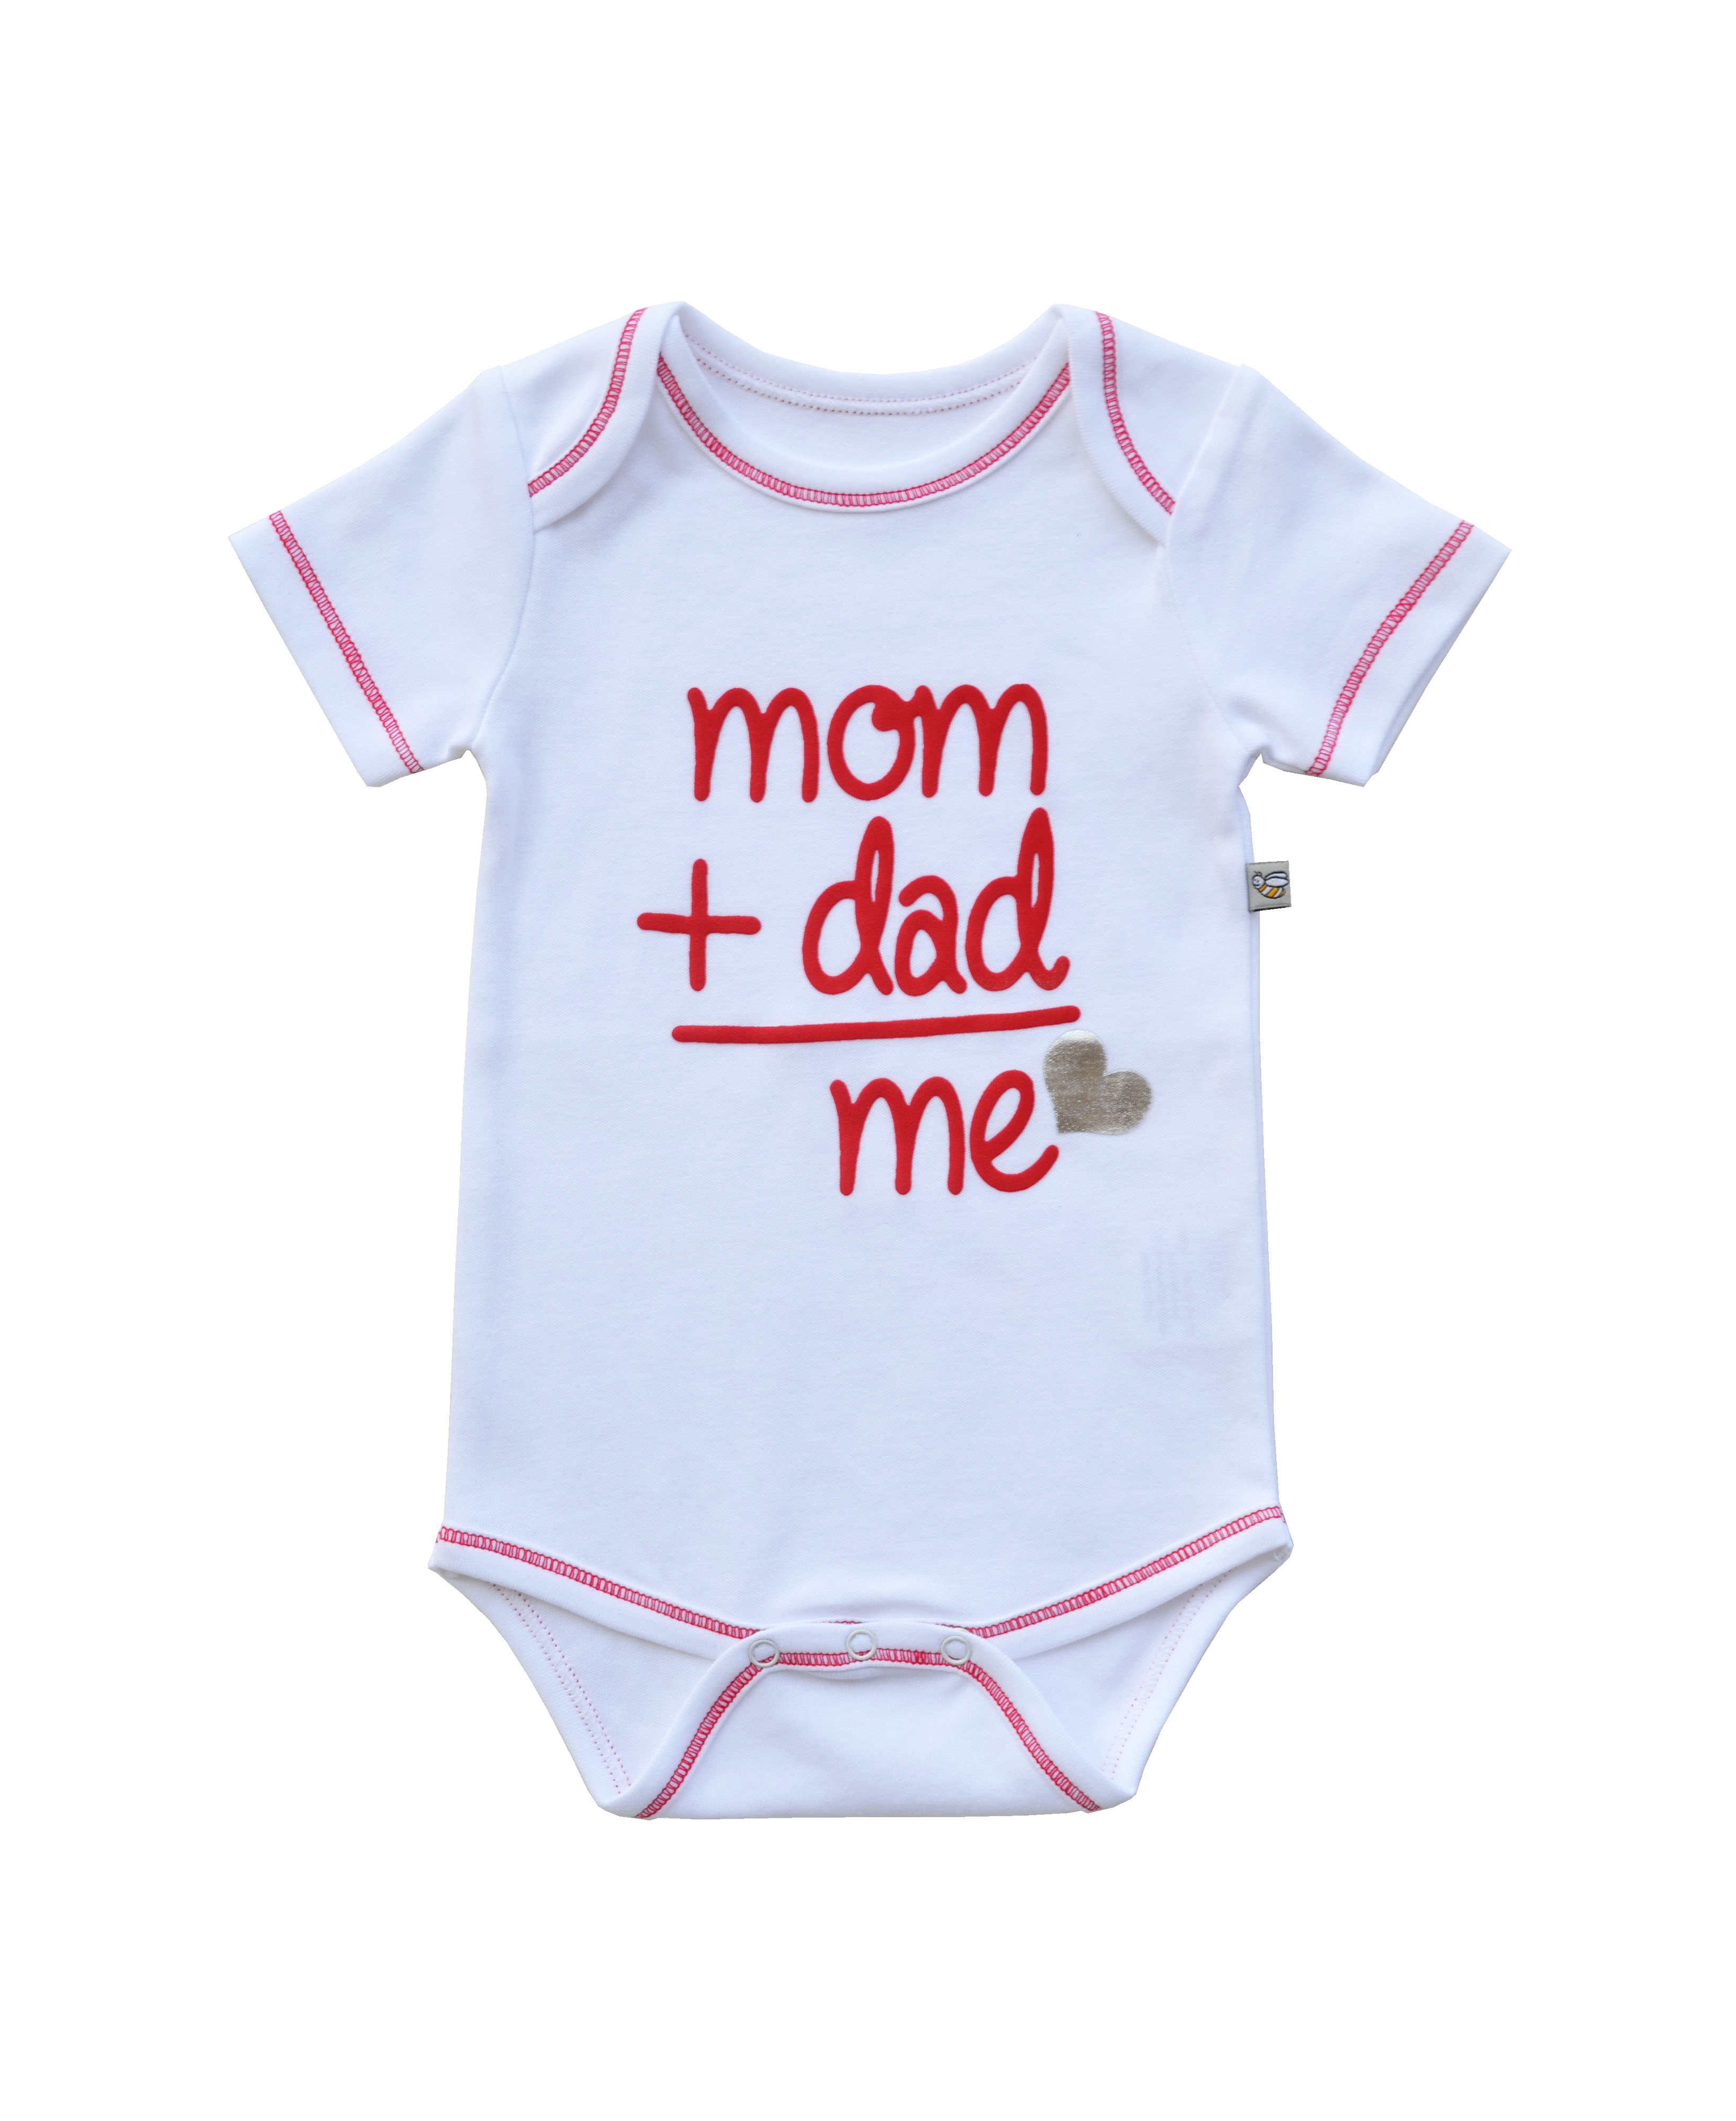 Babeez | Mom + Dad= Me Print On White Baby Romper/Onesie(100% Cotton) undefined